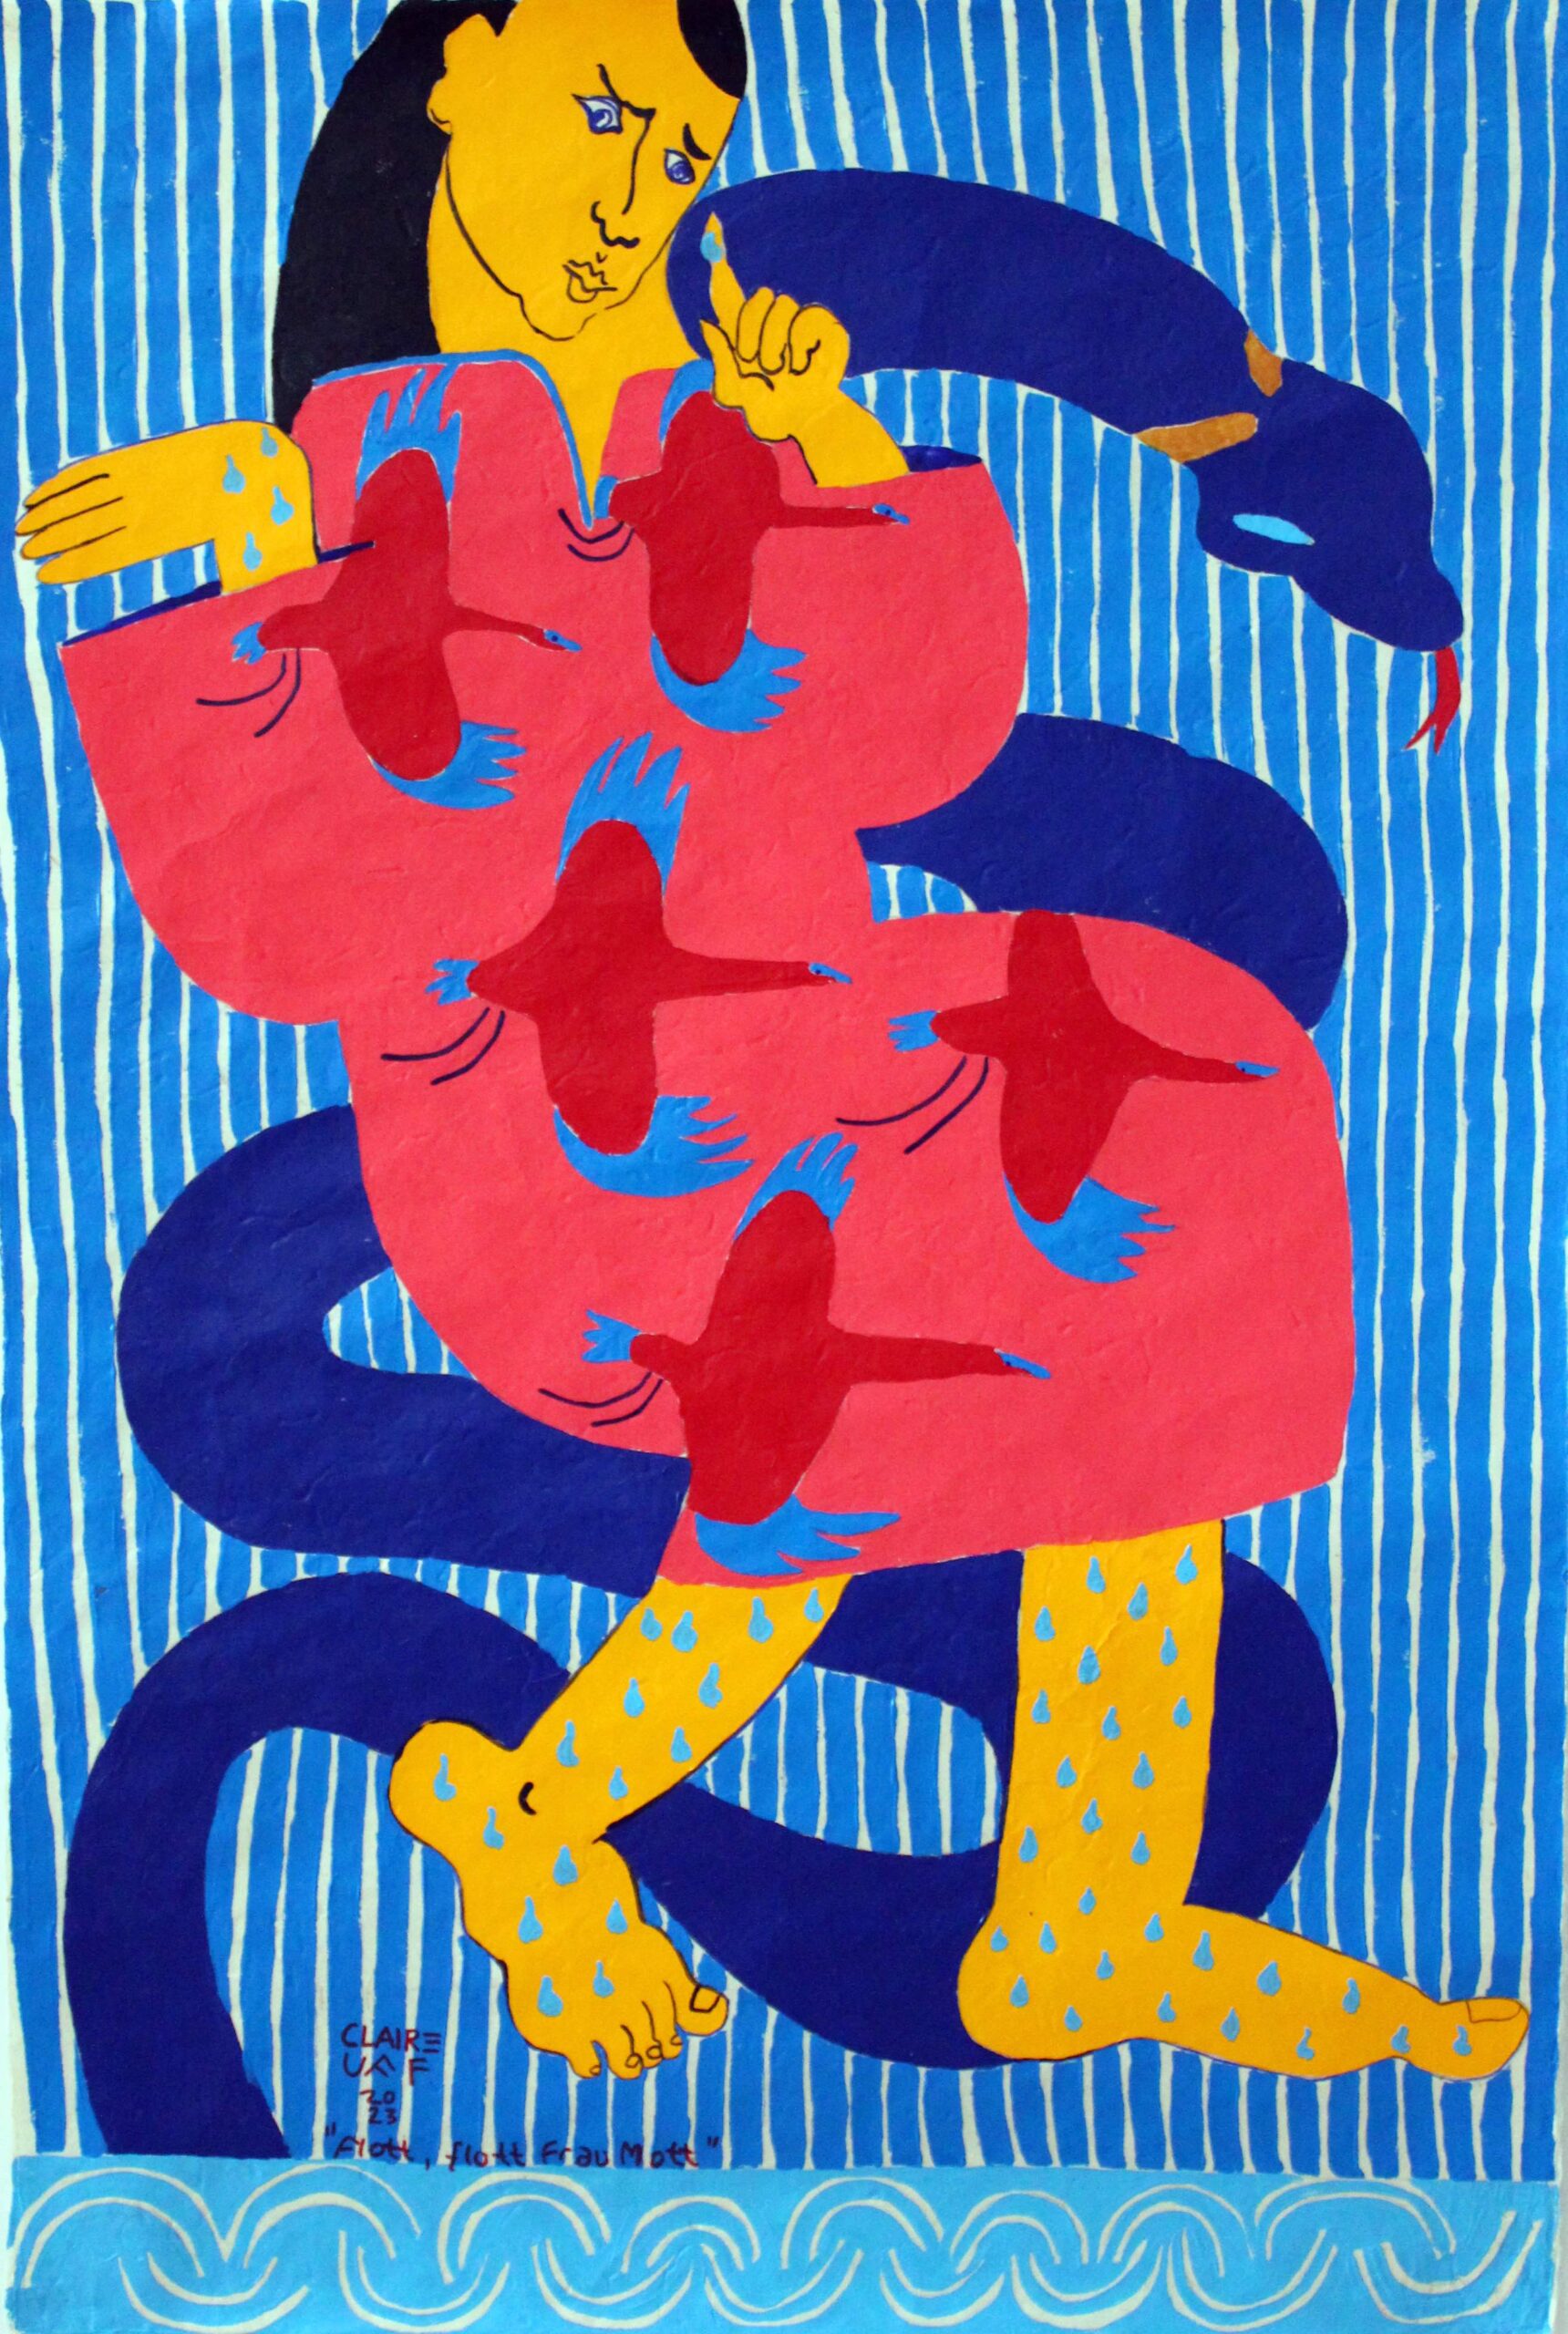 Flott Flott Frau Mott /Loktapapier / Handgeschöpft / Claire Uff / acrylic / Acryl / contemporaryart / contemporary / art / Berliner Künstlerin / painting / contemporarypainting / nass / summer / swim / Schwimmen / See / lake / blue / snake / Pink / Kraniche / Streifen / Wellen / Blau / Portrait